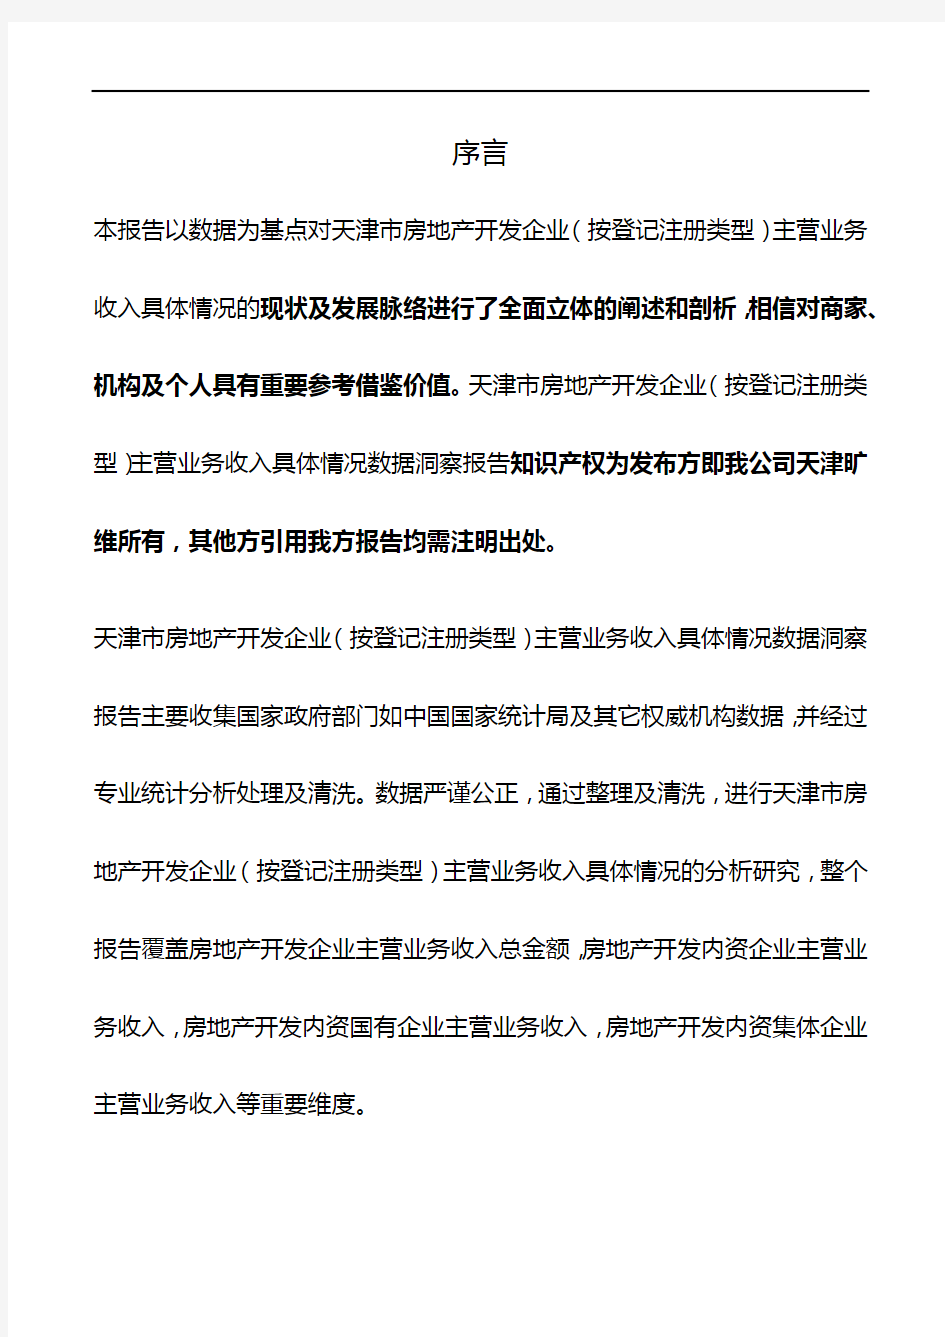 天津市房地产开发企业(按登记注册类型)主营业务收入具体情况3年数据洞察报告2019版